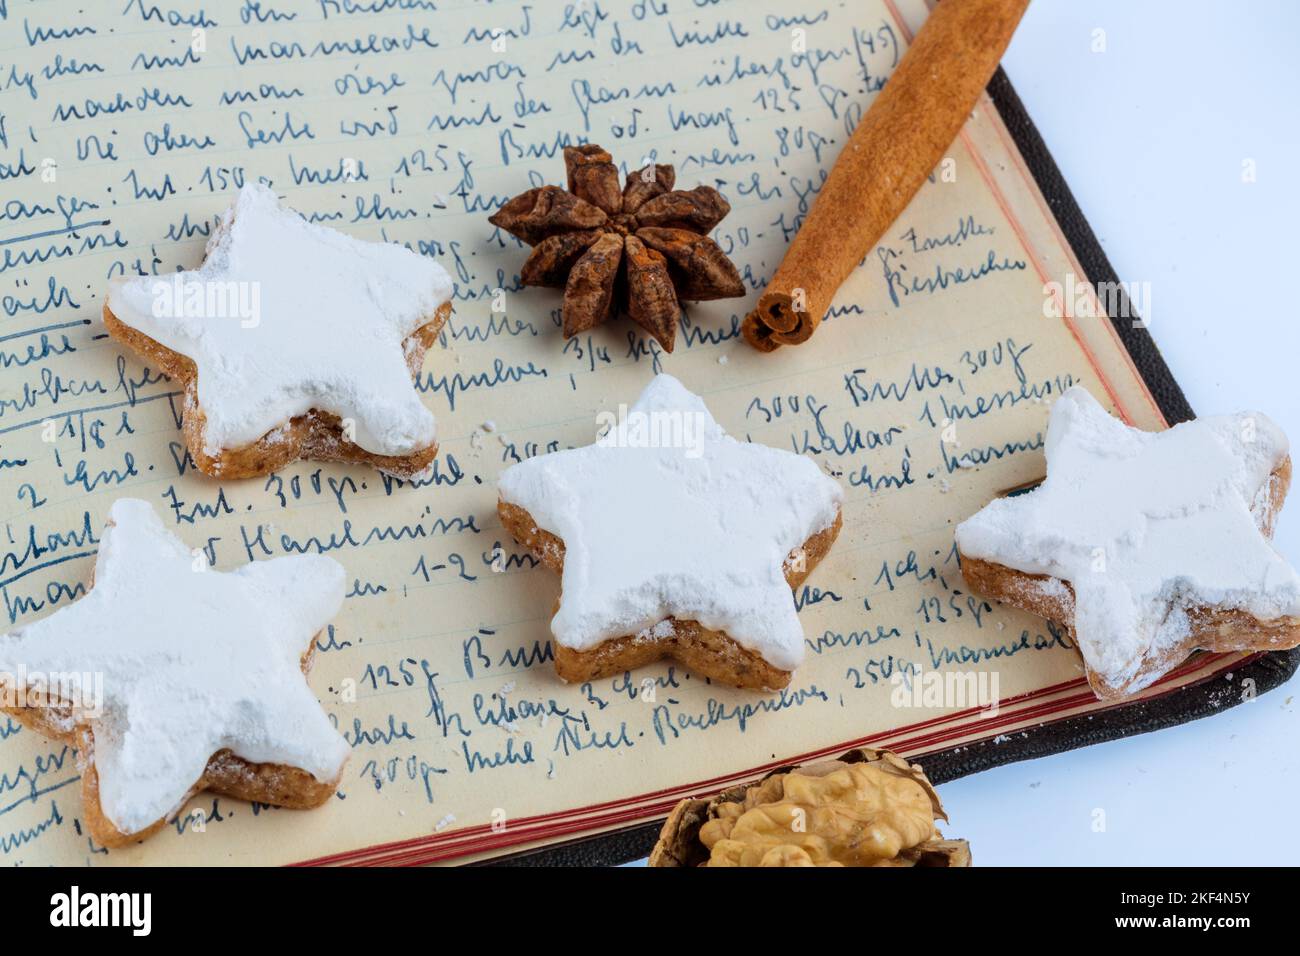 Weihnachtsbäckerei, Zutaten für Kekse und Plätzchen, die zu Weihnachten gebacken werden, Rezeptbuch, Omas Rezepte, Stock Photo